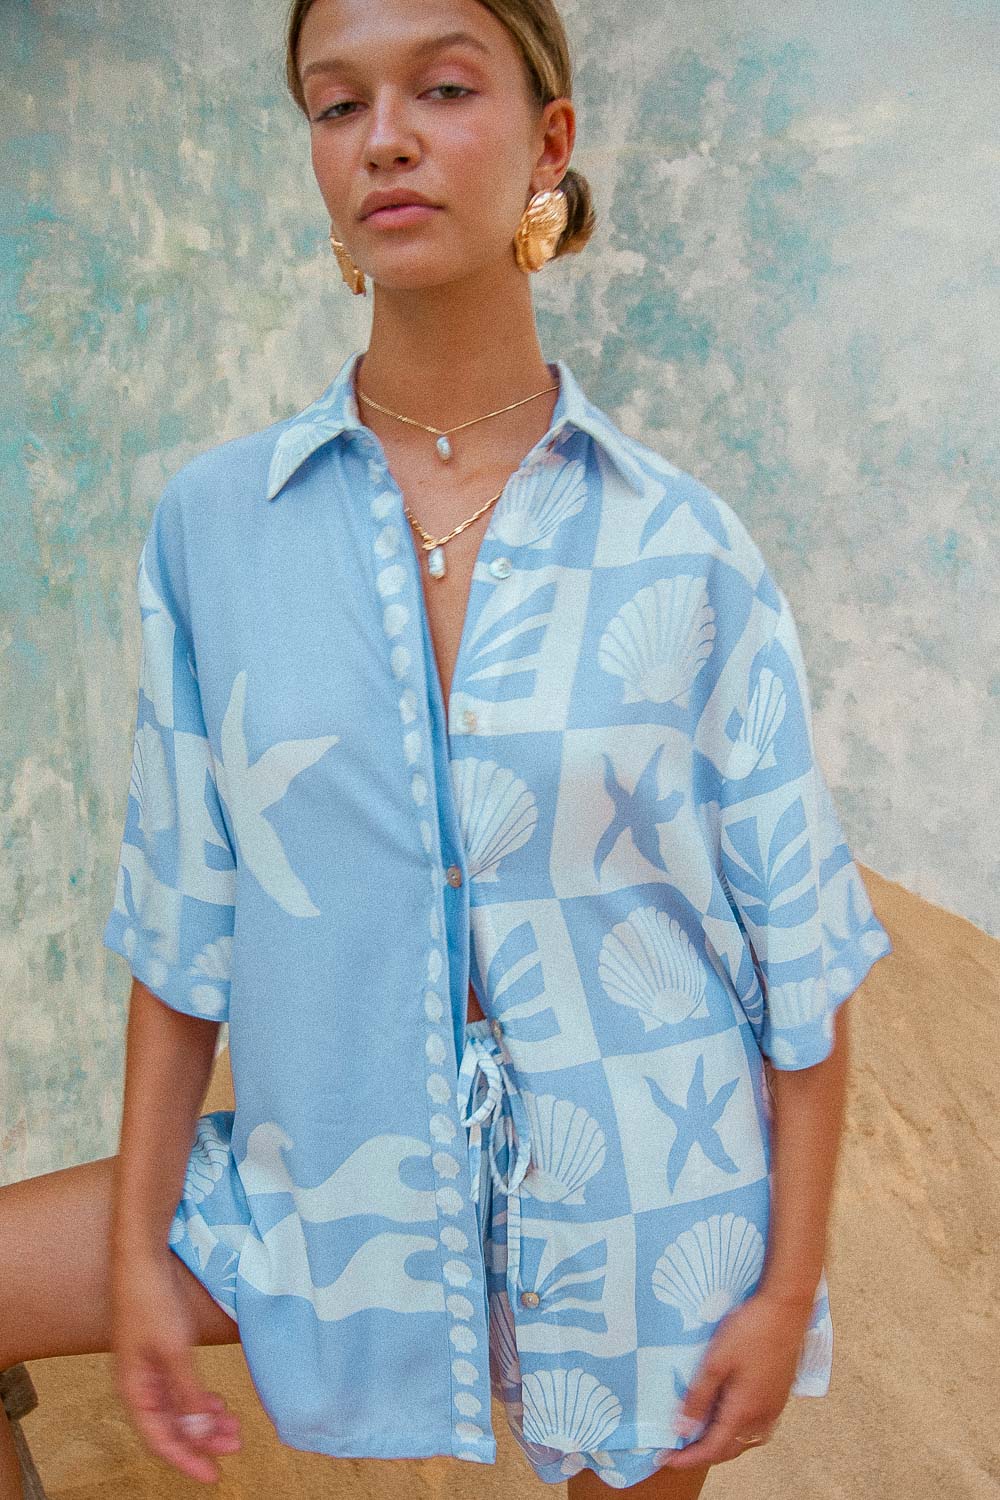 Port Villa Shirt Port Villa Shirt blue shell print blouse matching coord summer outfit set